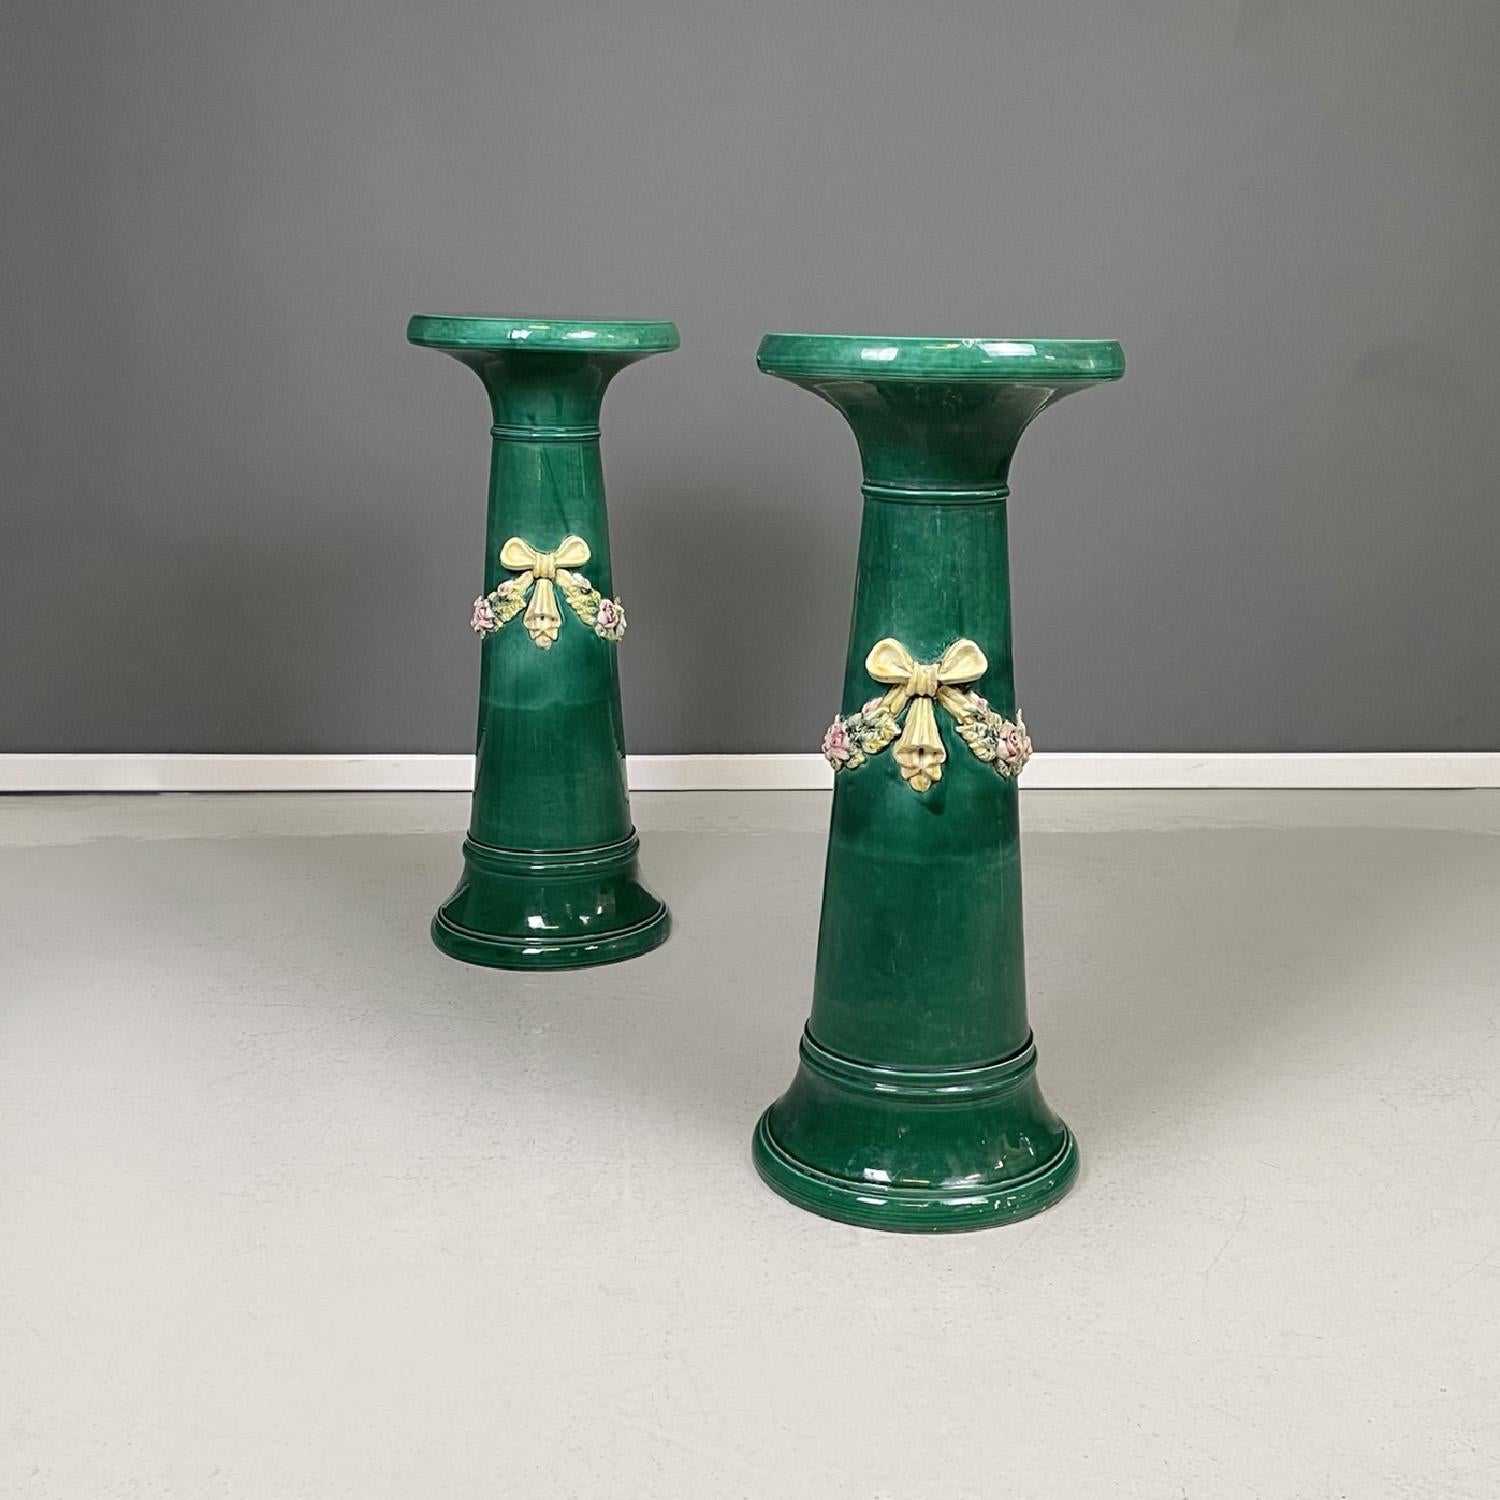 Colonnes en céramique verte de style impérial italien, piédestaux avec nœuds et fleurs, années 1930
Paire de piédestaux à base ronde. La structure conique se rétrécit au sommet et s'élargit à la base. La structure est en céramique verte avec une